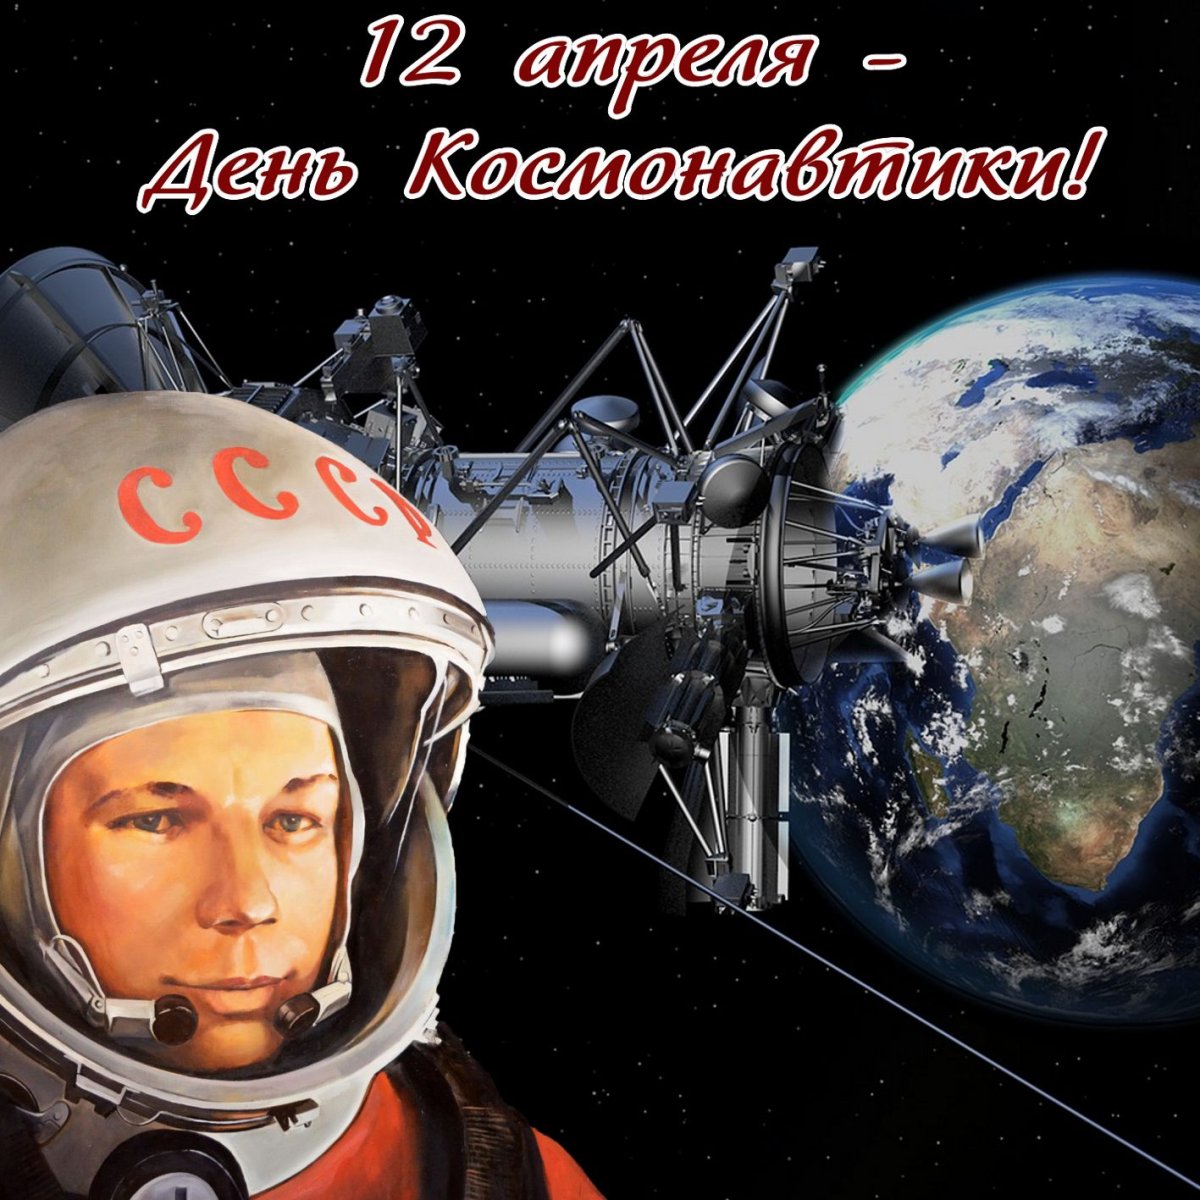 Поздравления с днем космонавтики 11